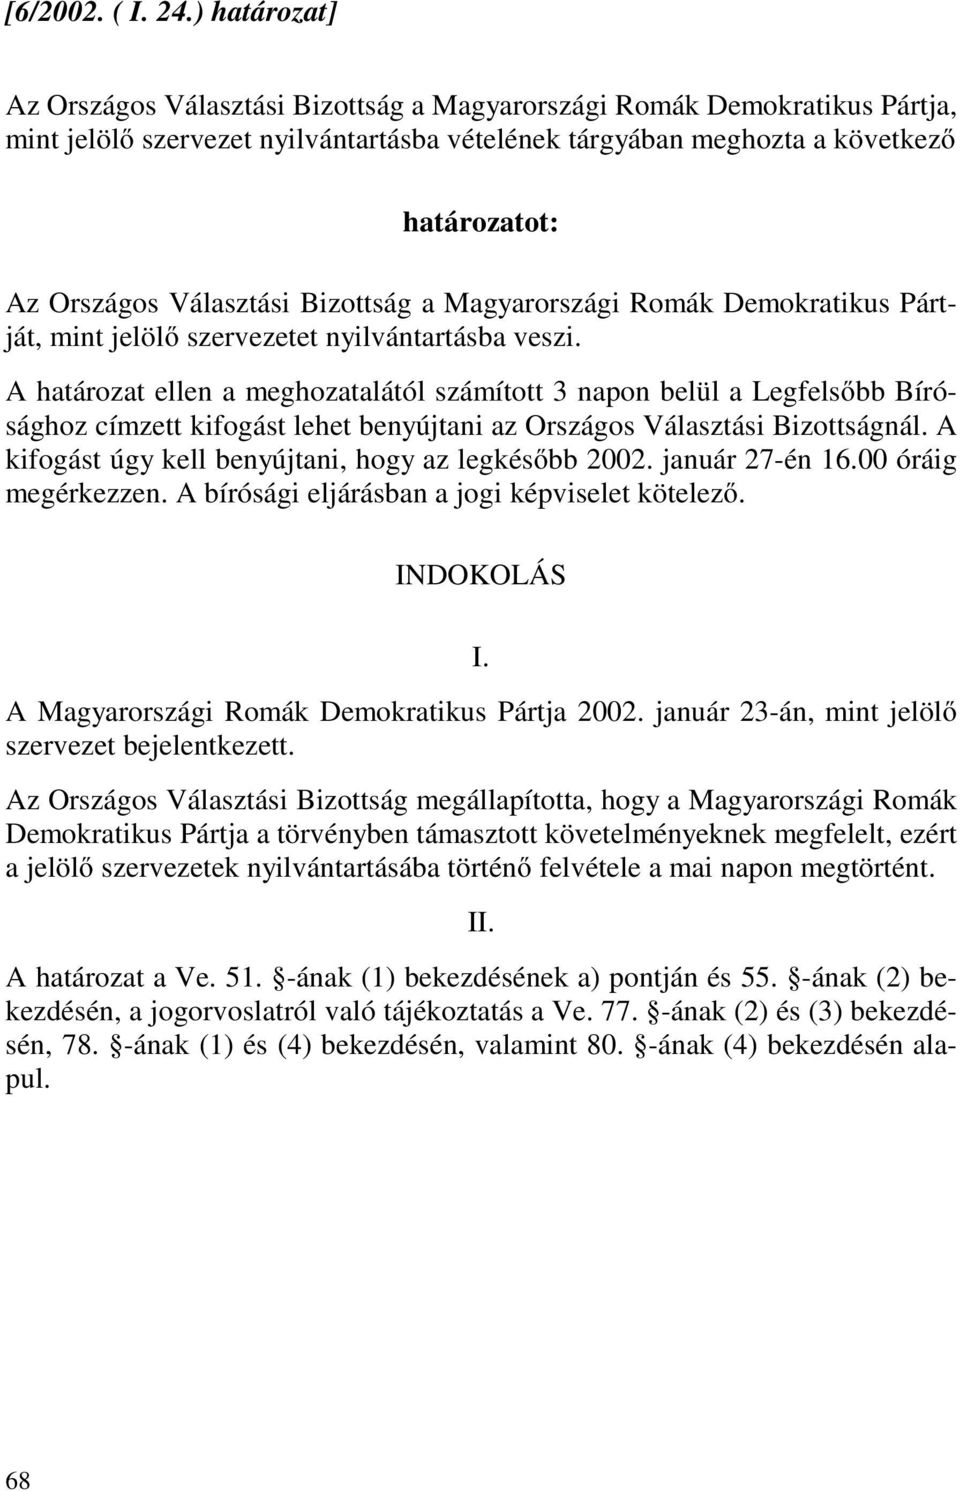 Bizottság a Magyarországi Romák Demokratikus Pártját, mint jelölő szervezetet nyilvántartásba veszi.